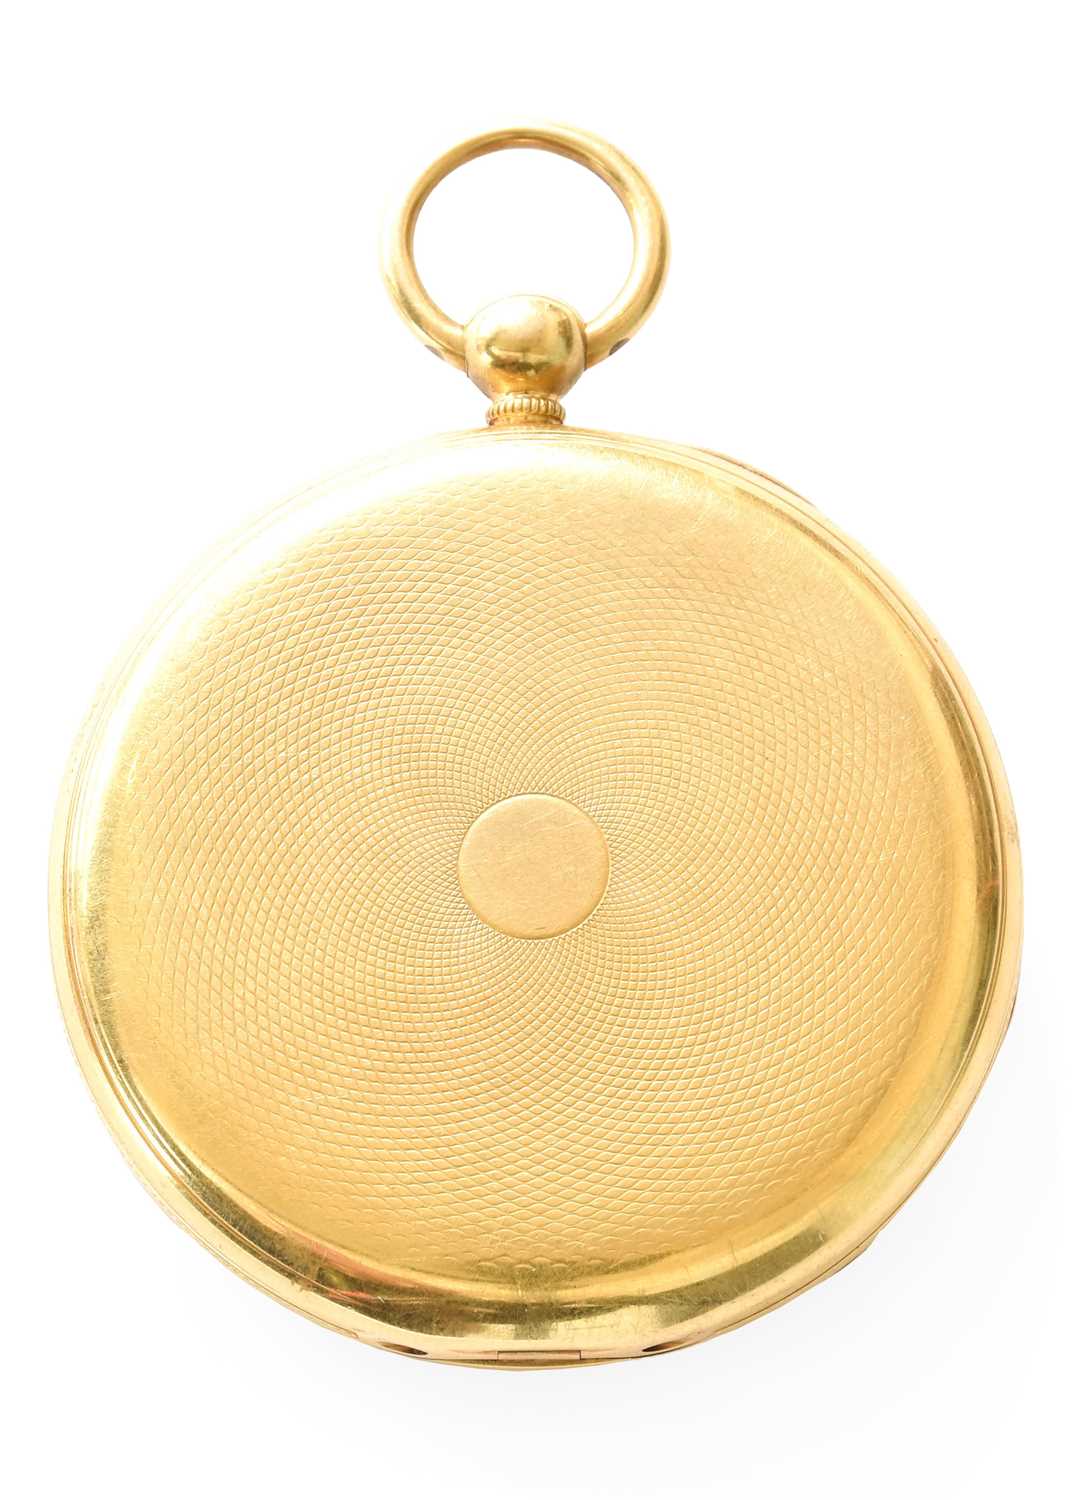 An 18 Carat Gold Open Faced Duplex Pocket Watch, signed Robert Roskell, Liverpool, duplex movement - Image 2 of 3